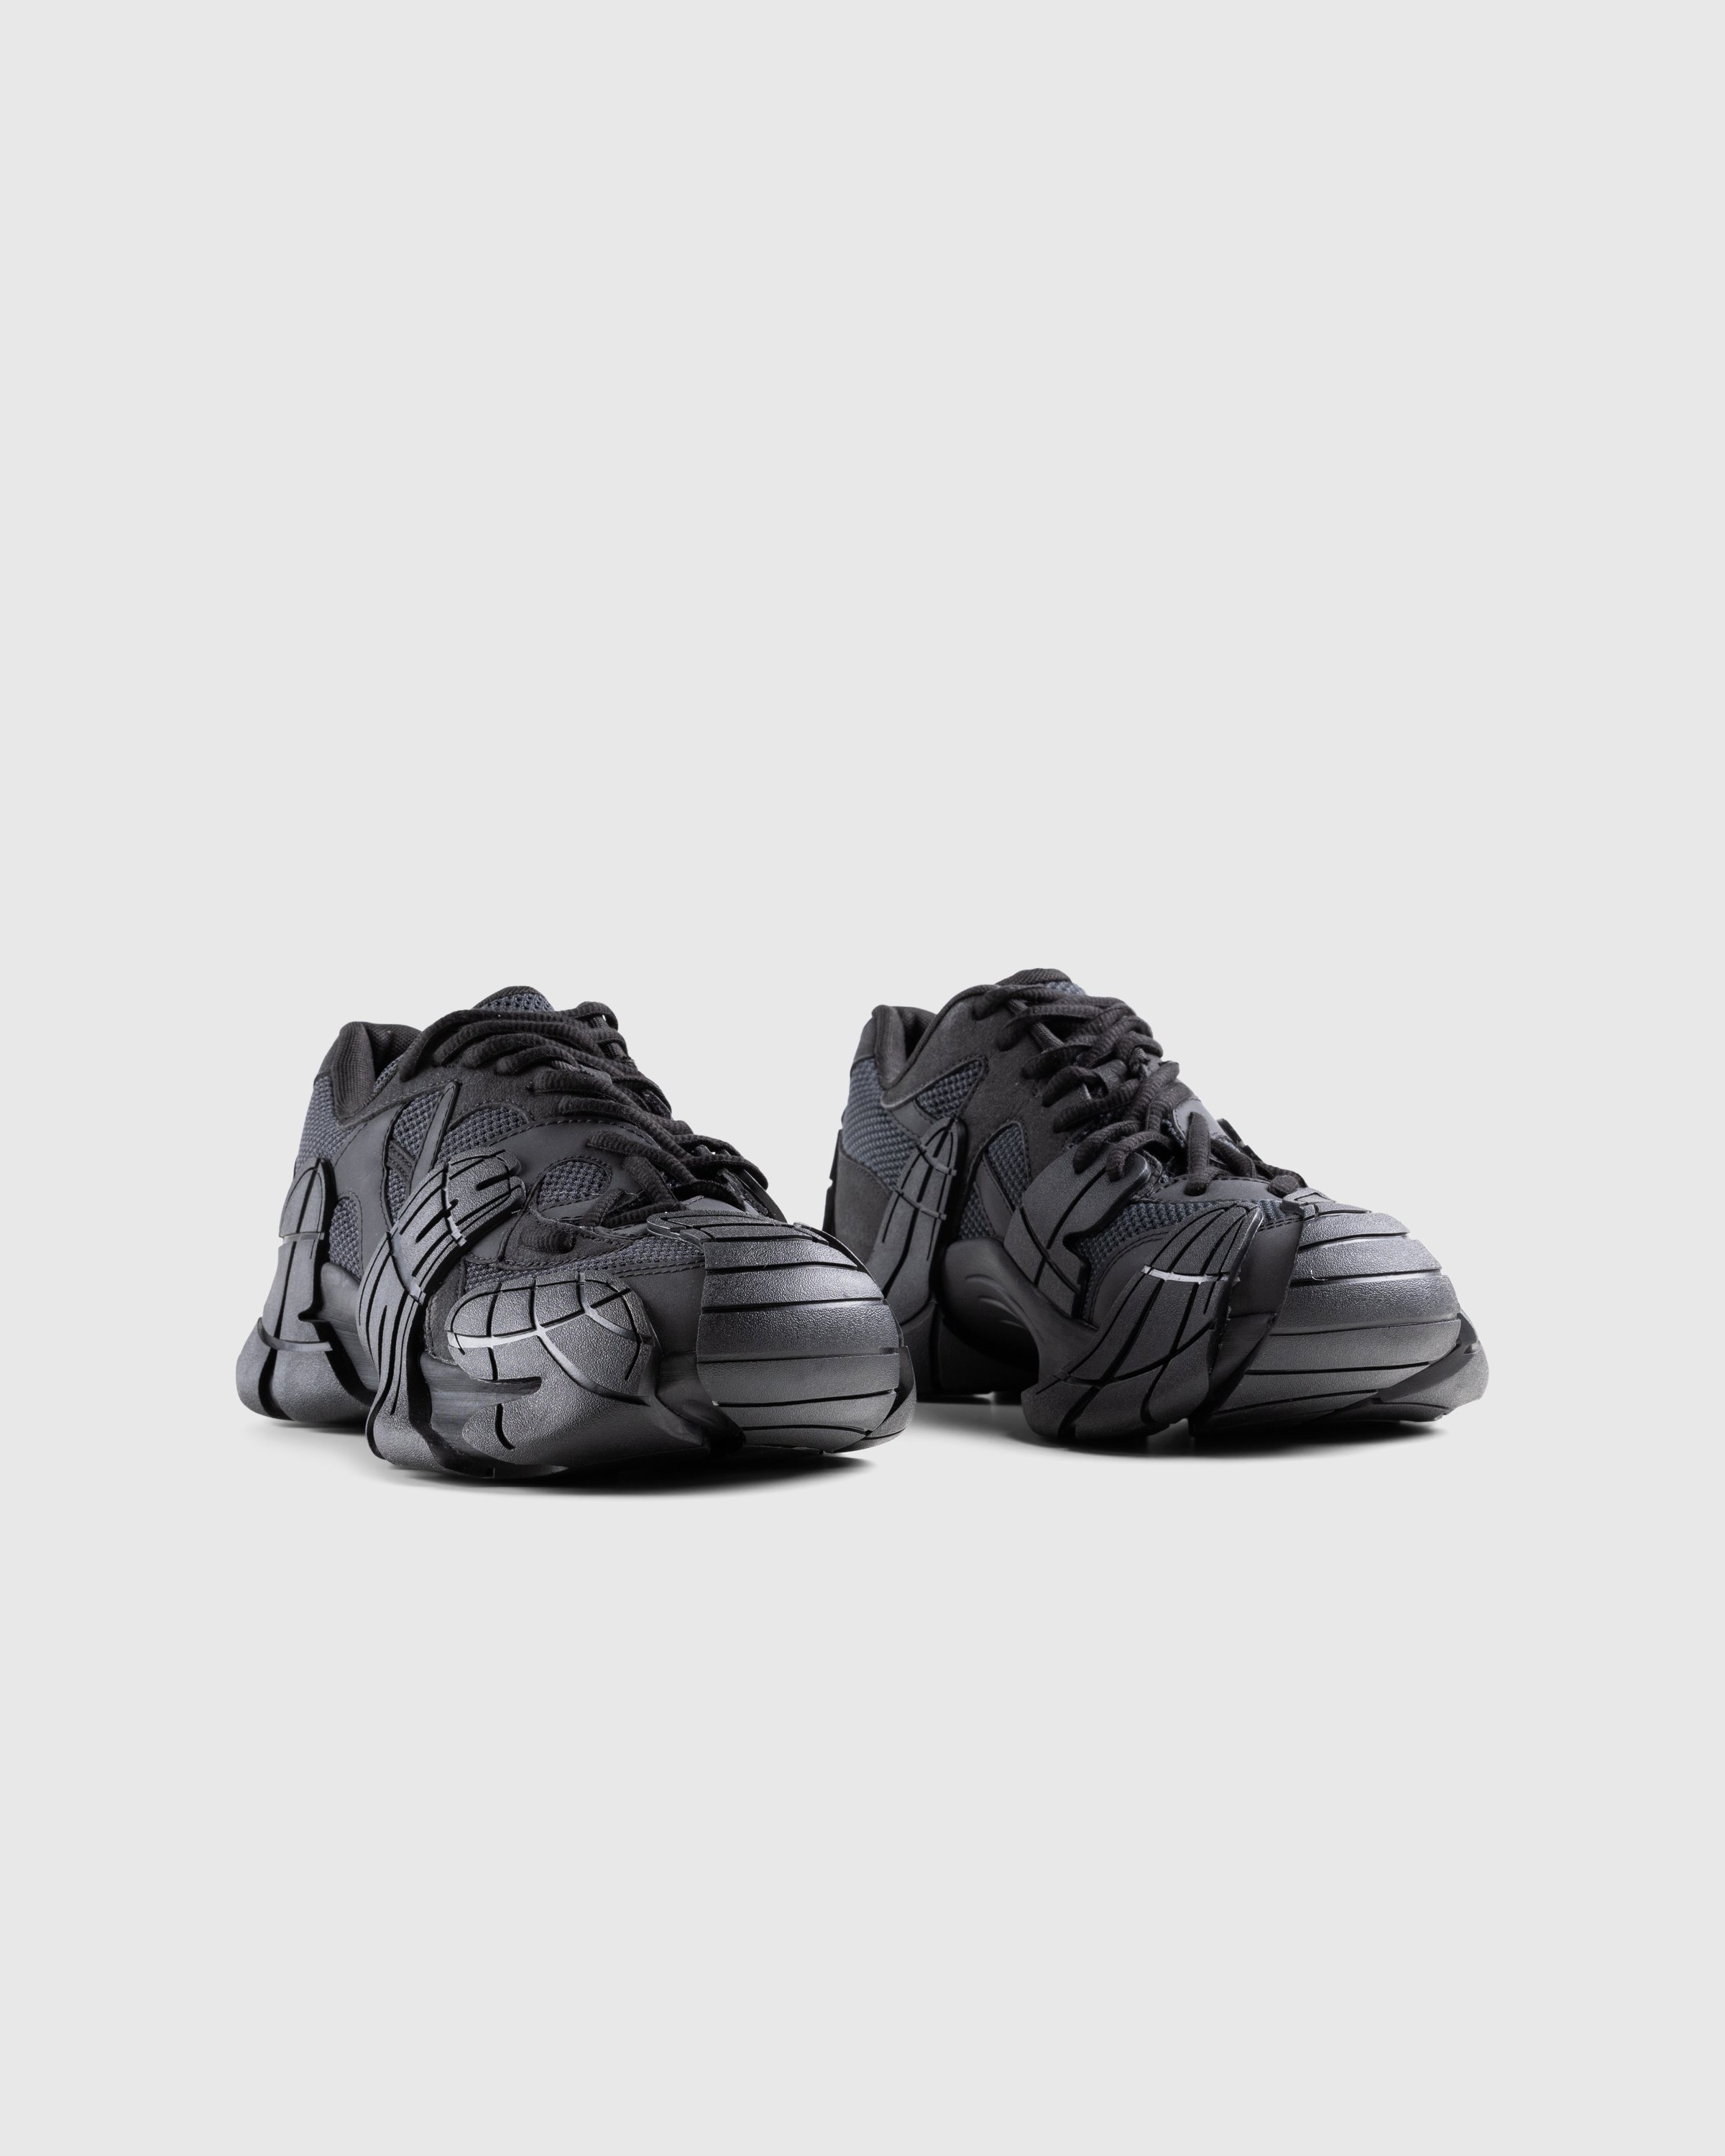 CAMPERLAB - Tormenta Black - Footwear - Black - Image 3